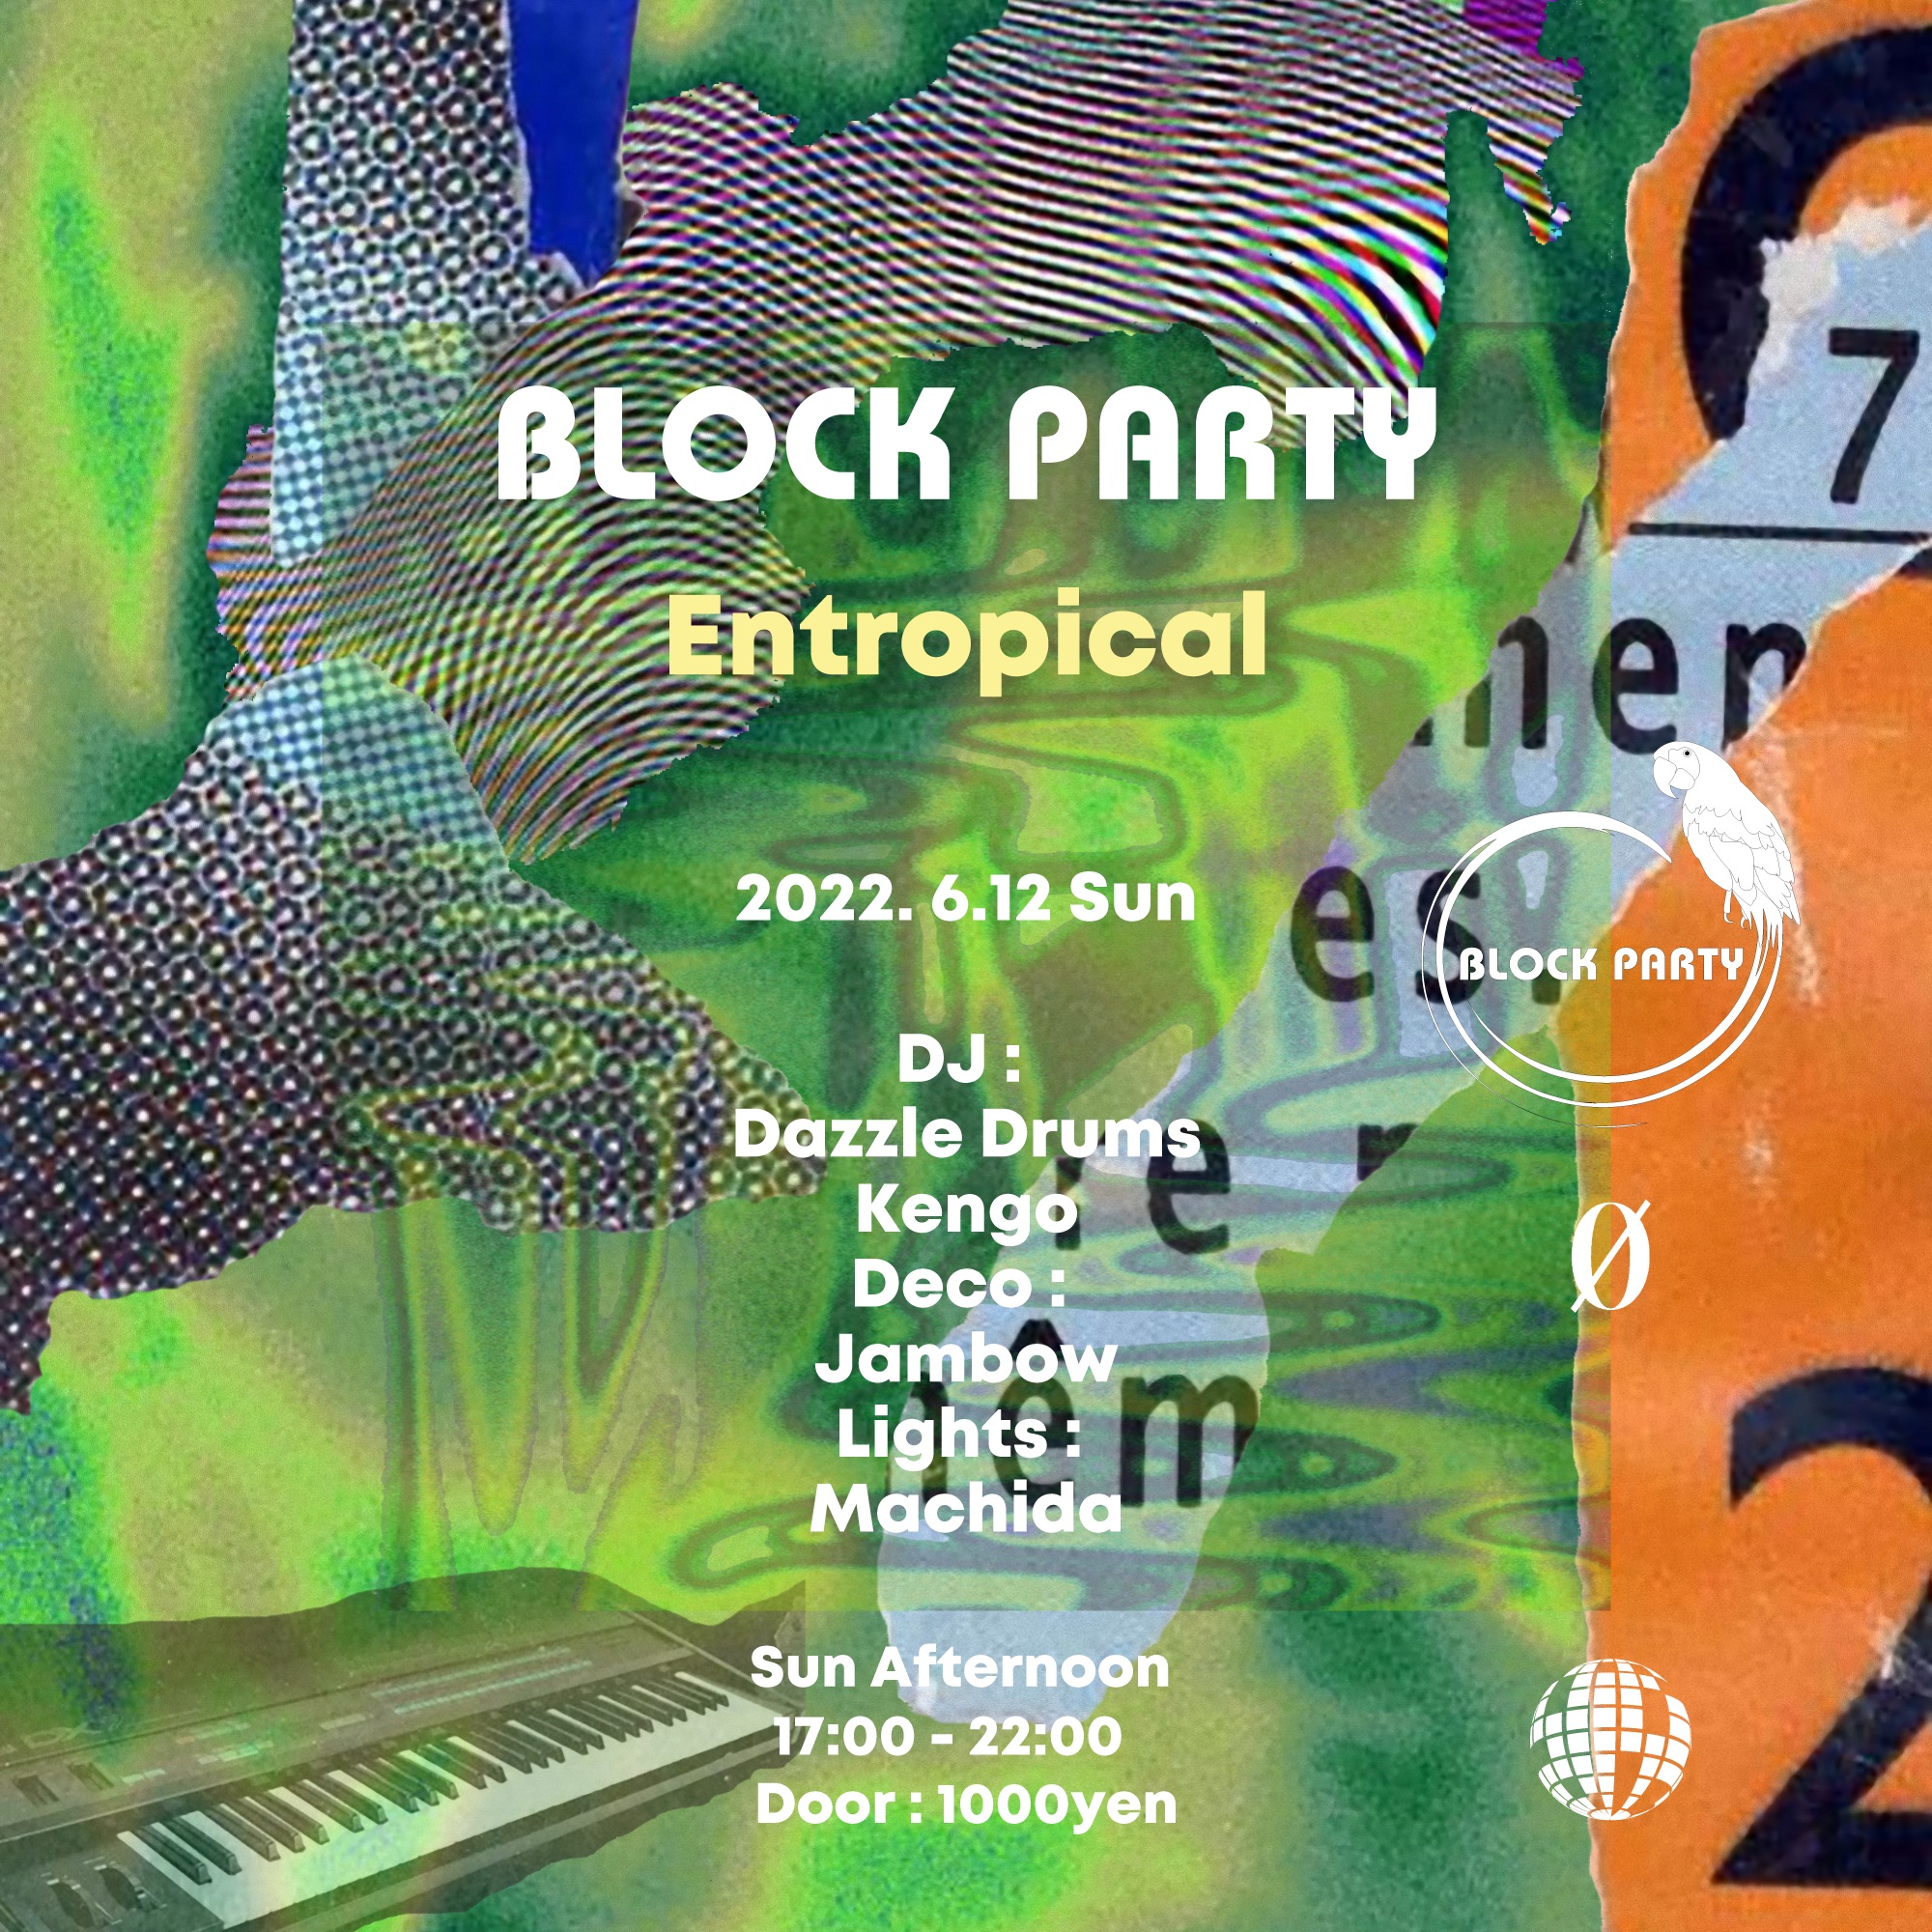 6.12.22 (Sun Afternoon) Block Party “Entropical” @ 0 Zero